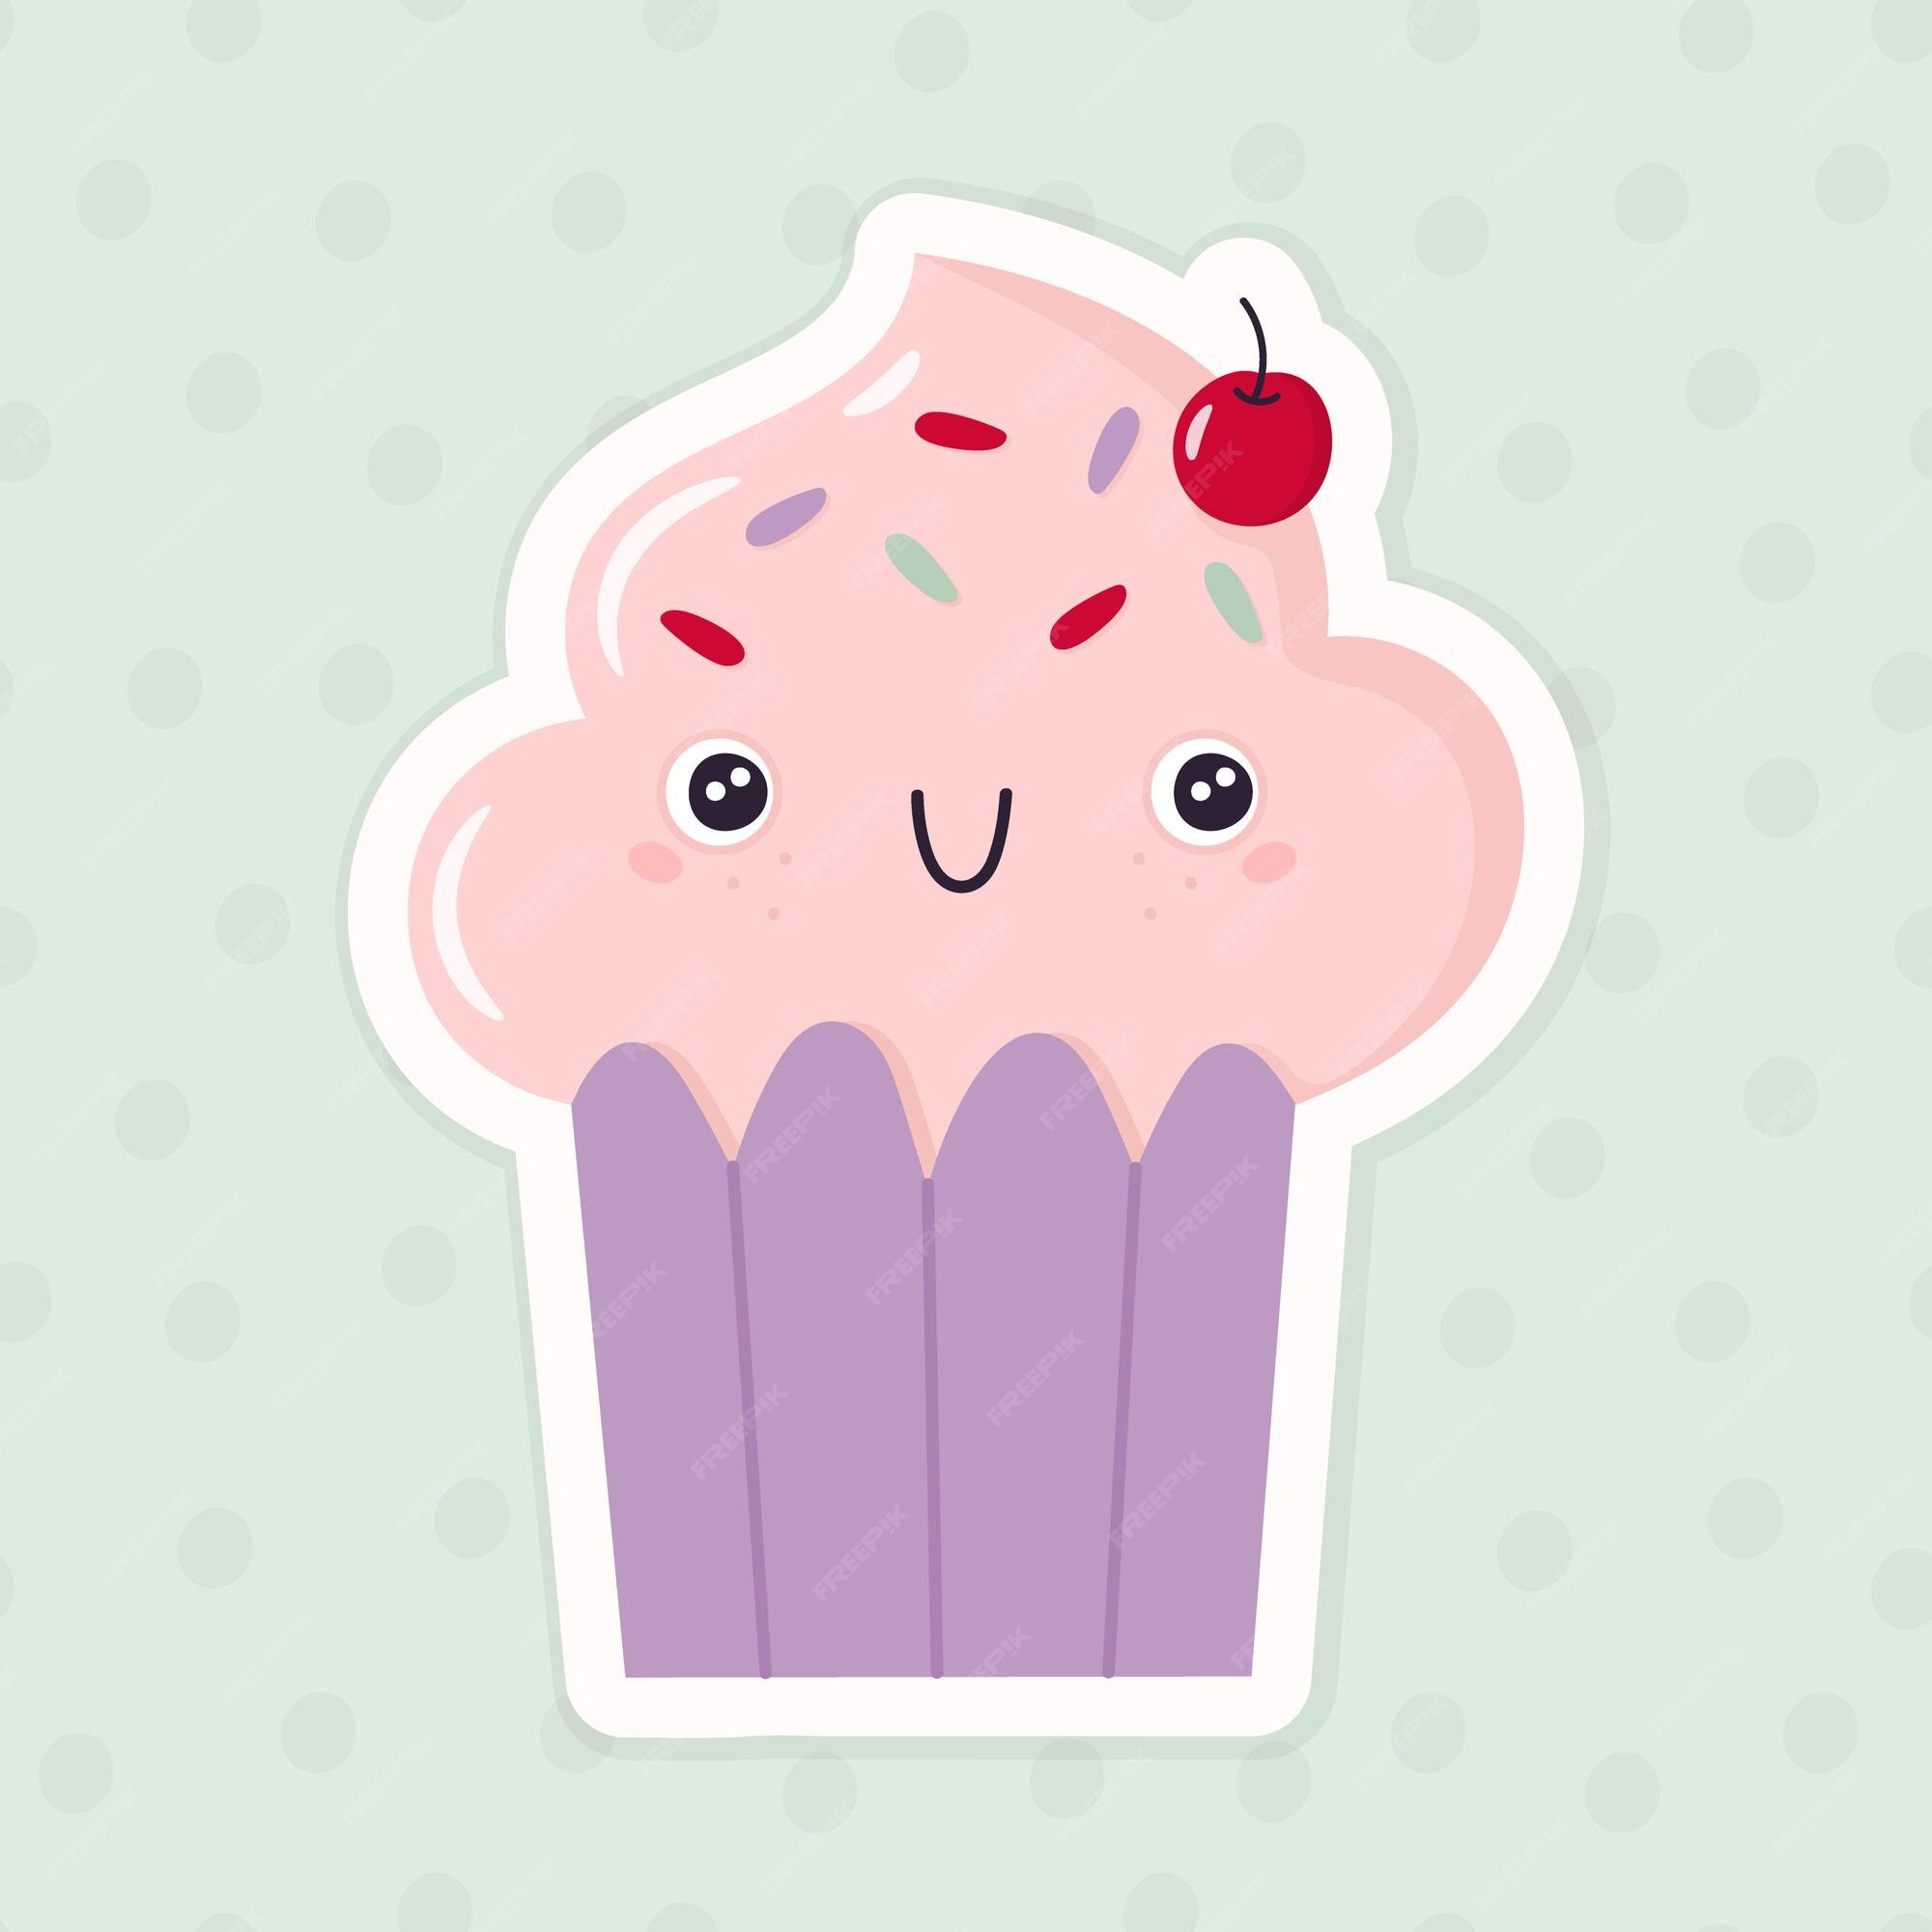 Cute Cupcake Images - Free Download on Freepik